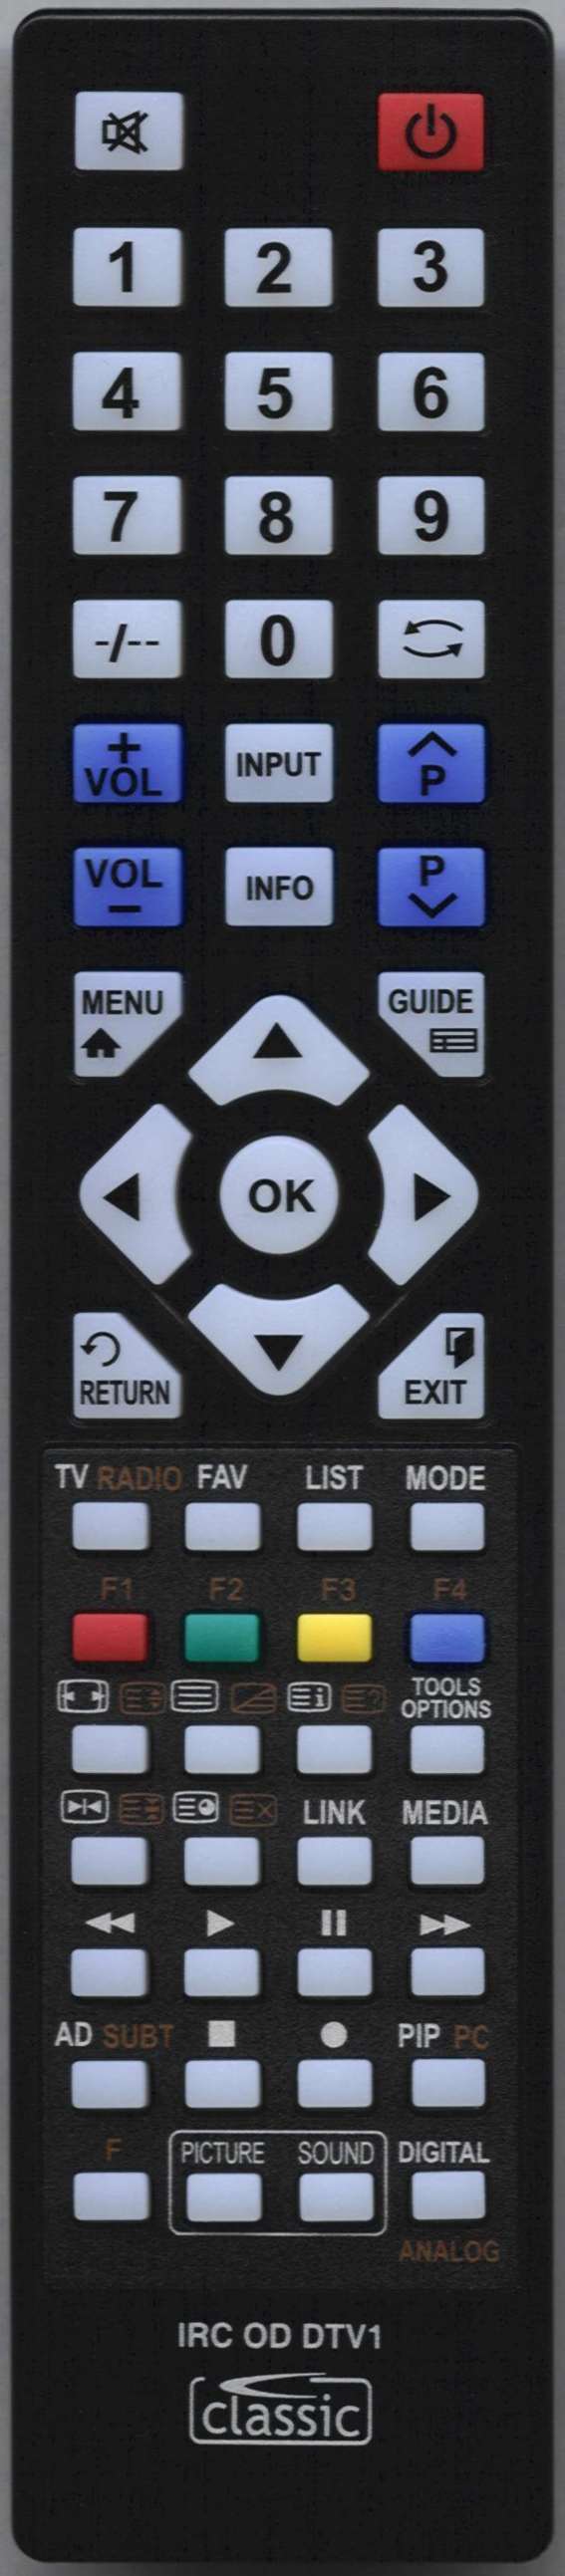 POLAROID TLU-03223 B Remote Control